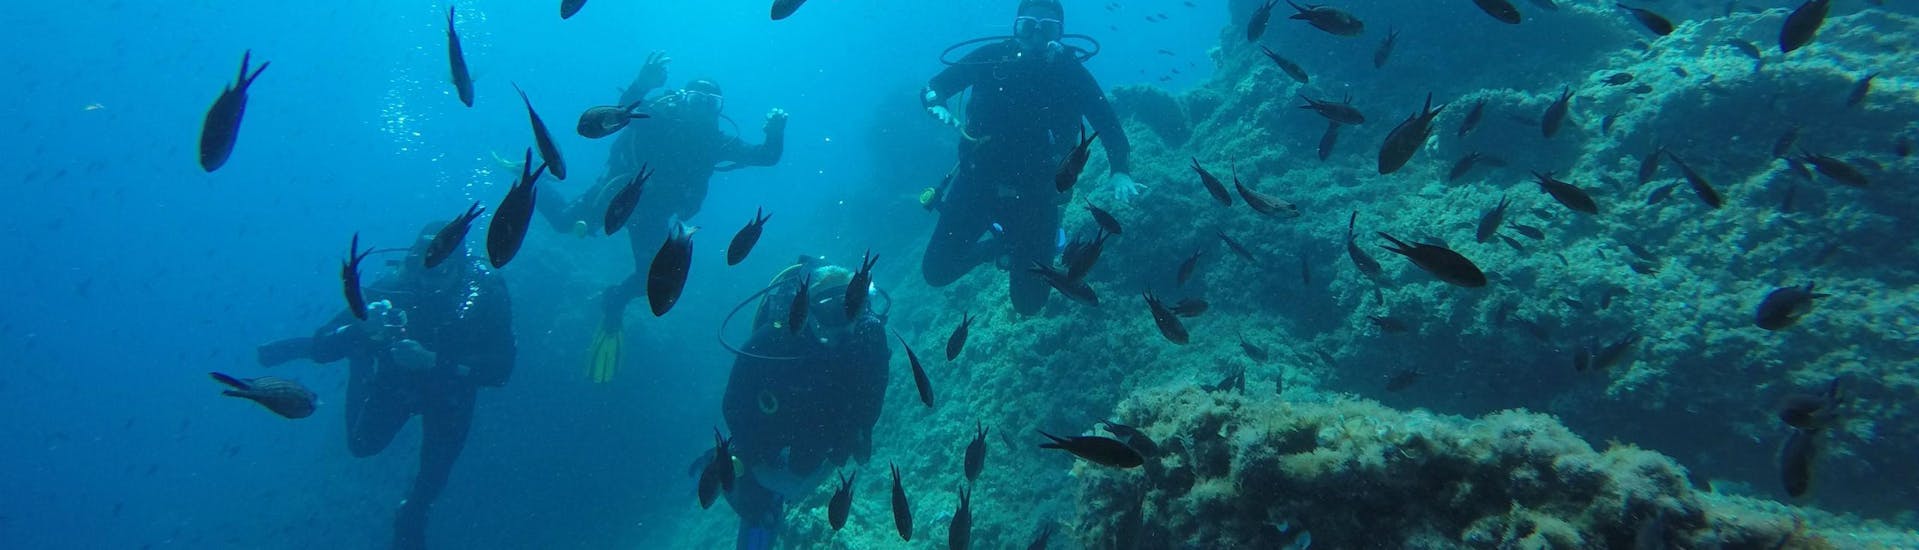 PADI Open Water Diver Tauchkurs in Dubrovnik für Anfänger.